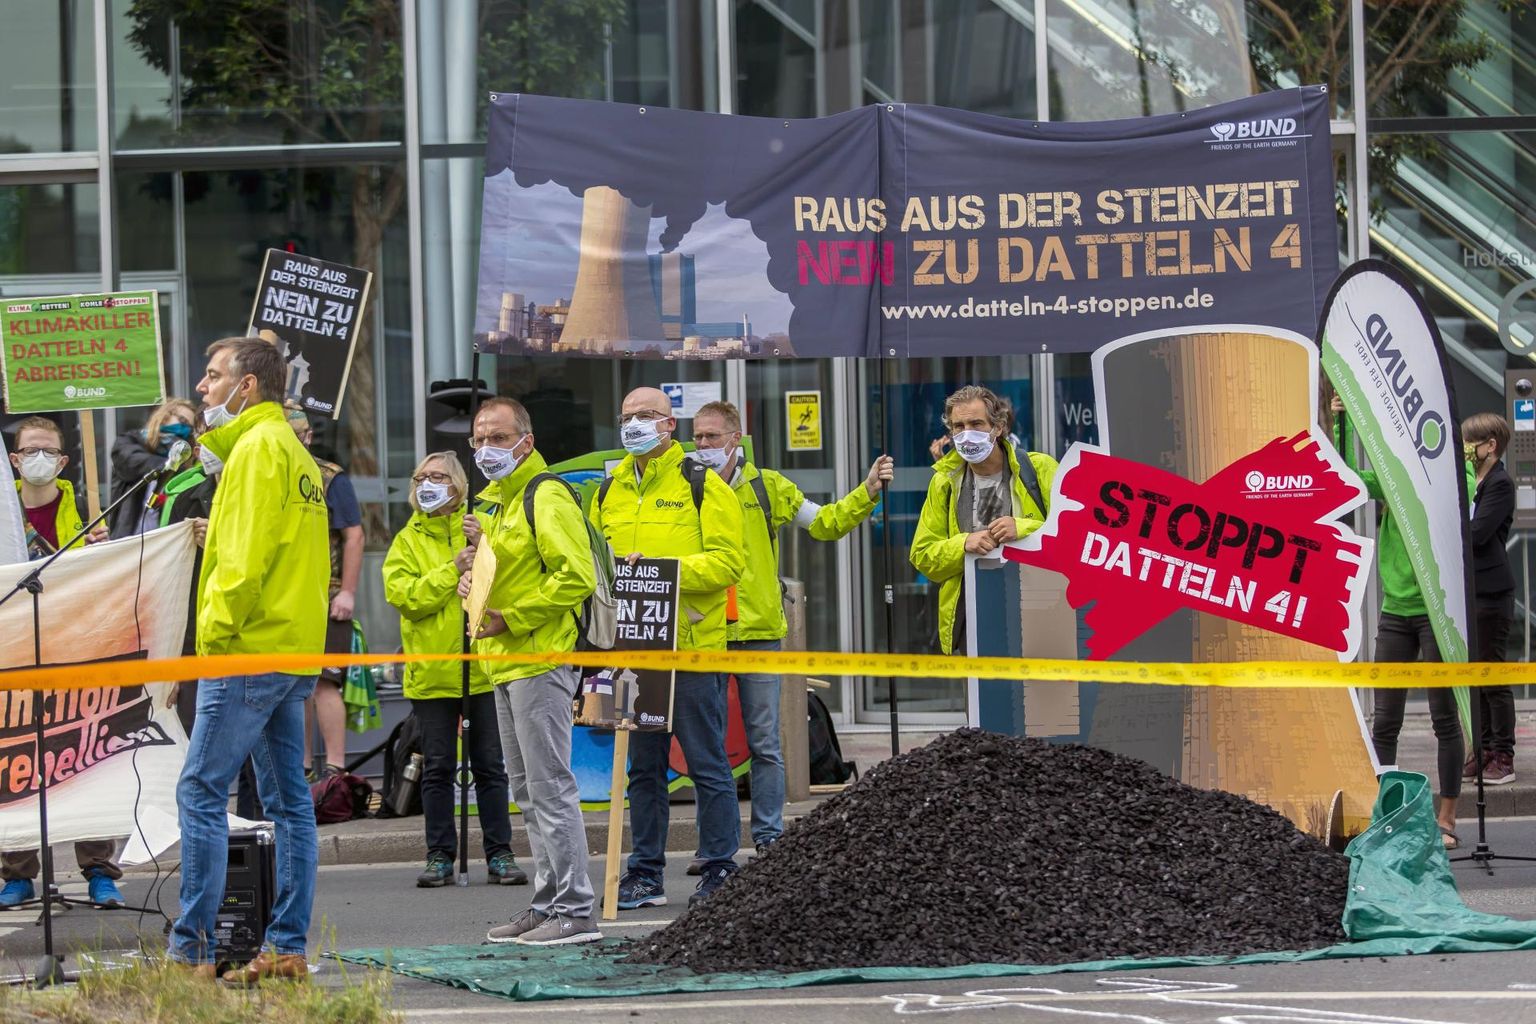 Koroonapandeemia tõmbas kliimaprotestidele pidurit, ent koos piirangute lõdvendamisega naasesid, maskid ees, ka meeleavaldajad. Eelmisel nädalal avaldati Düsseldorfis meelt uue kivisöe-elektrijaama avamise plaani vastu. Saksamaa on lubanud aastaks 2038 kivisöest elektritootmise lõpetada.